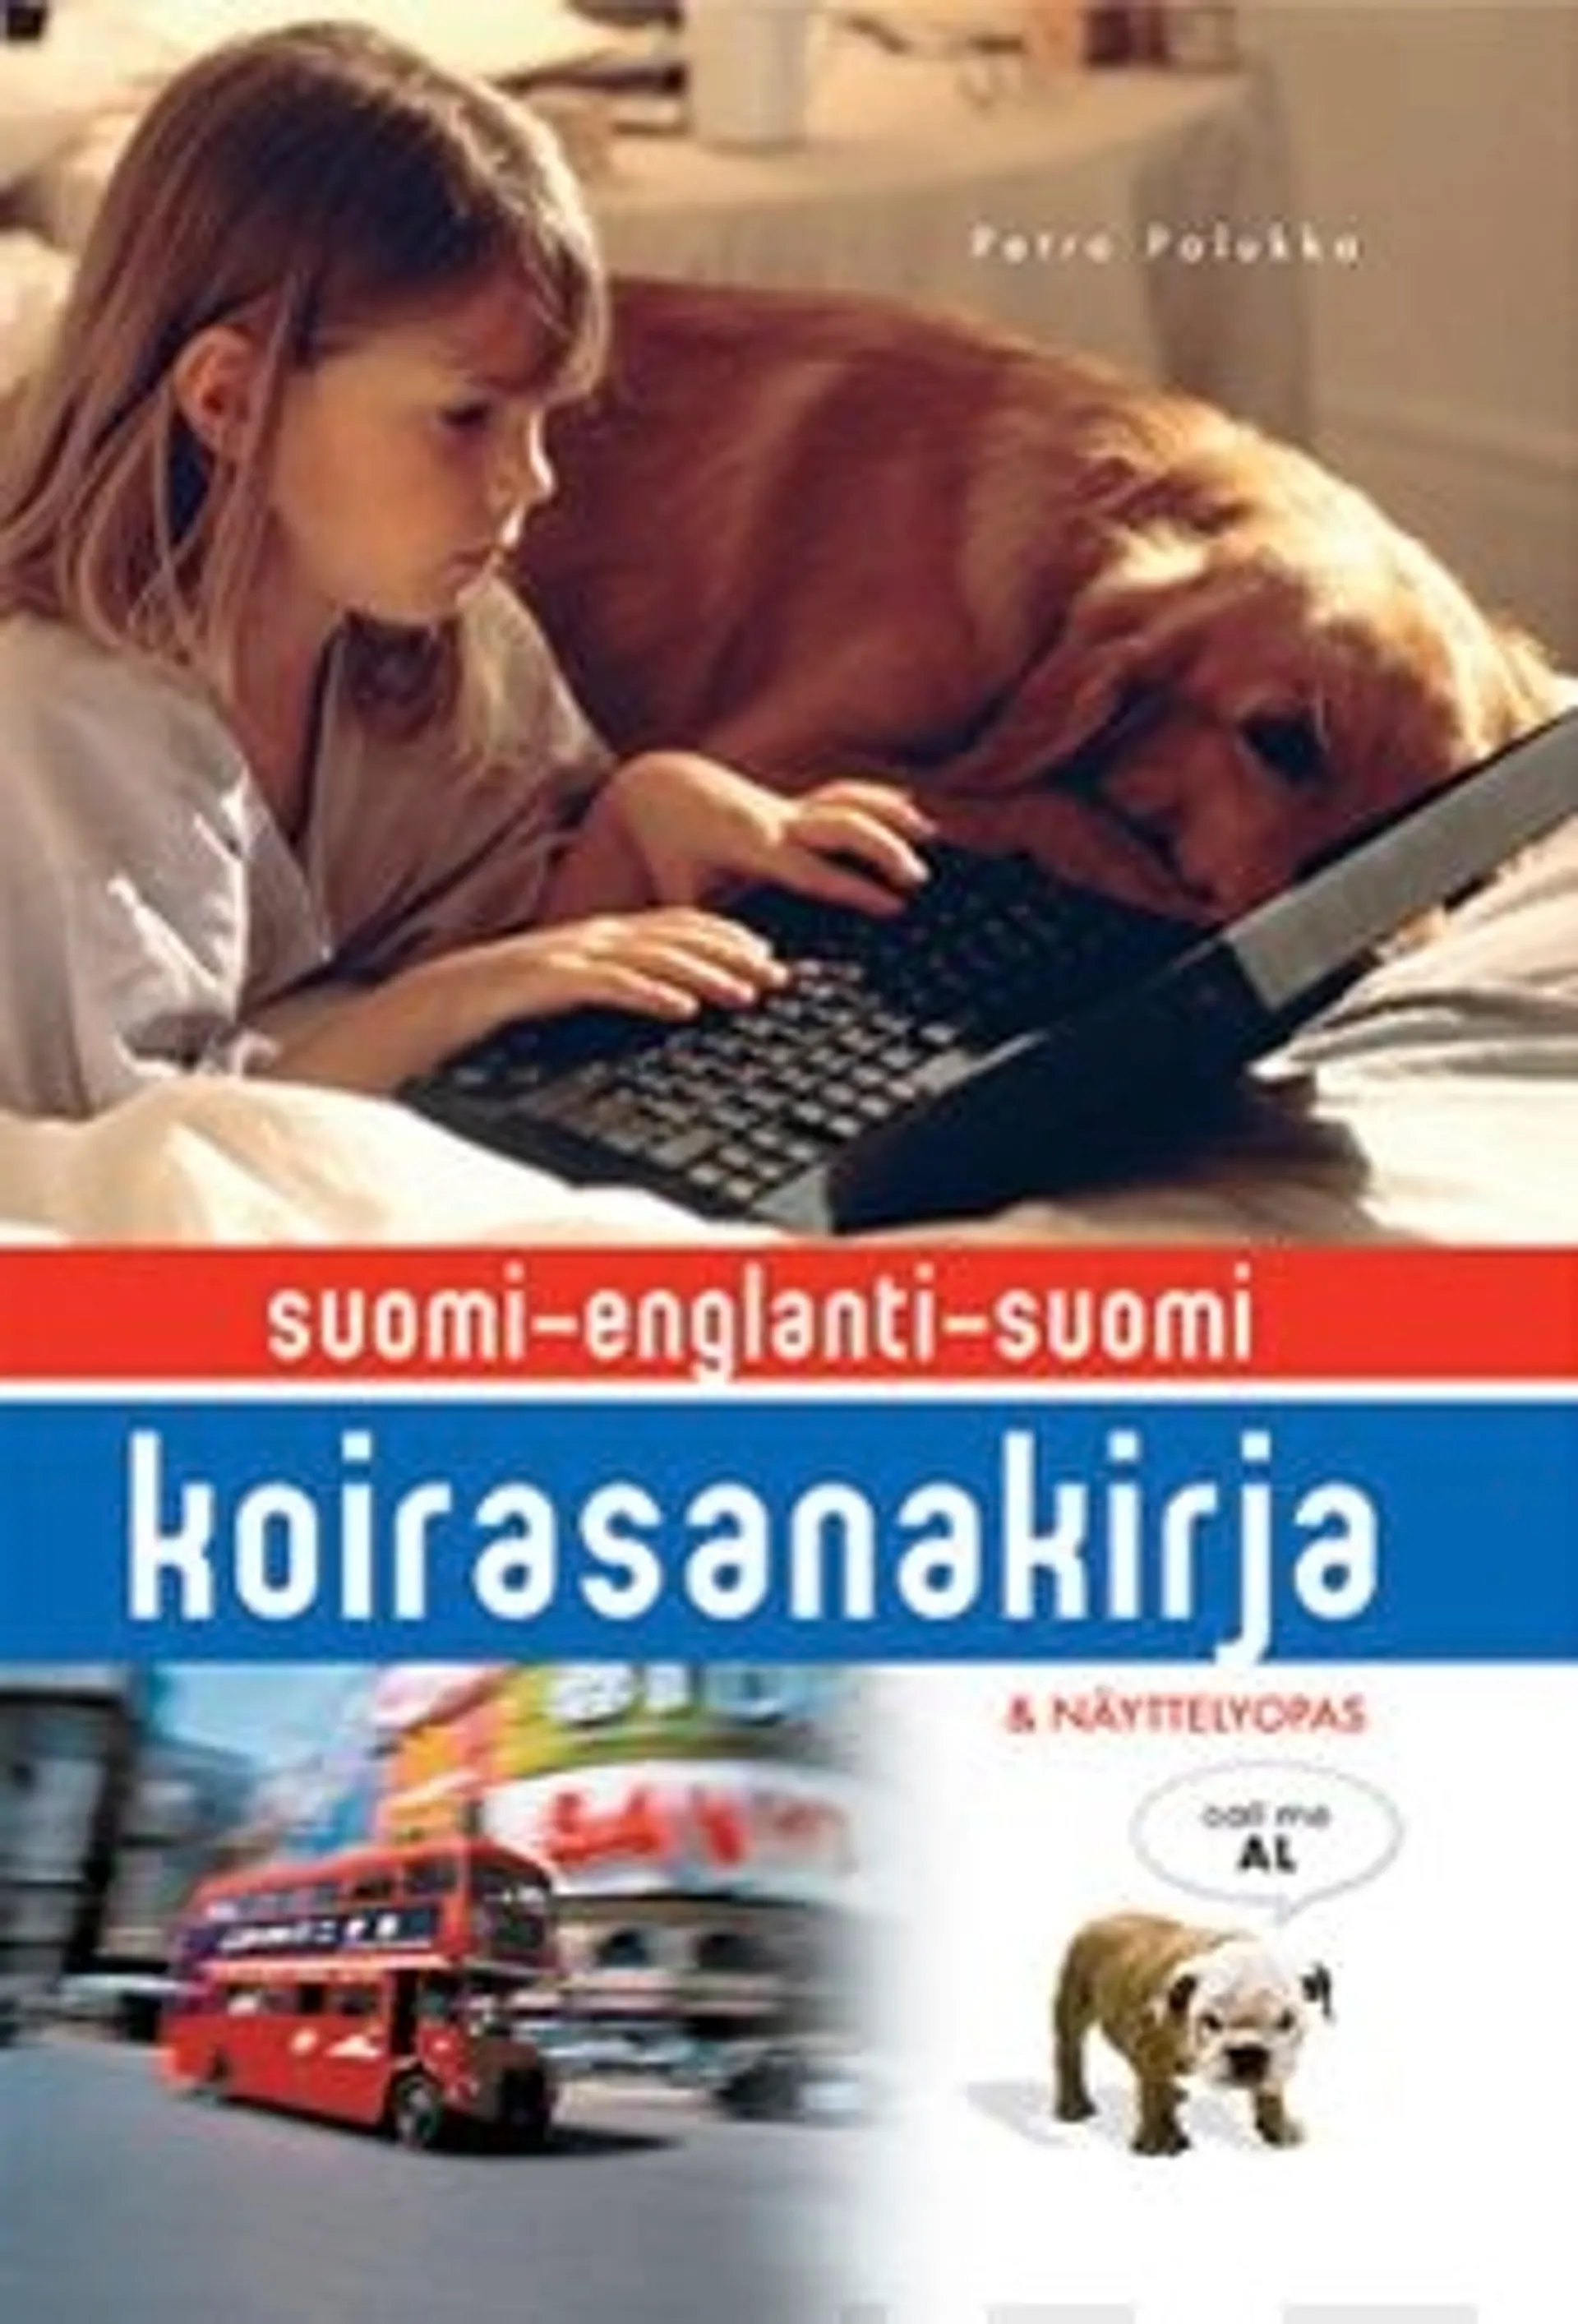 Palukka, Koirasanakirja suomi-englanti-suomi ja koiranäyttelyopas